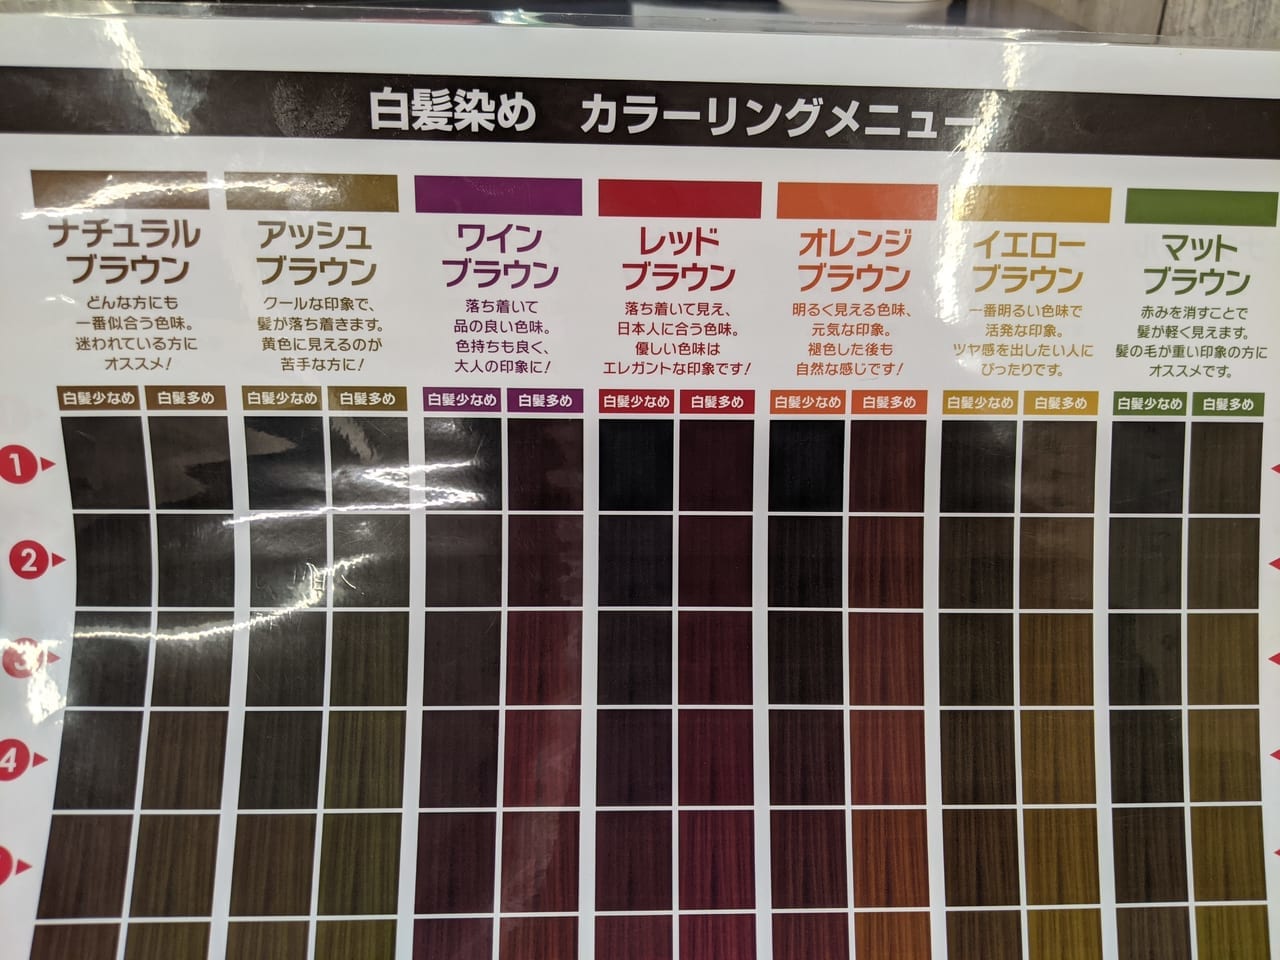 ヘアカラー専門店 Fast Color(ファストカラー) 西友東陽町店のカラーリングメニュー